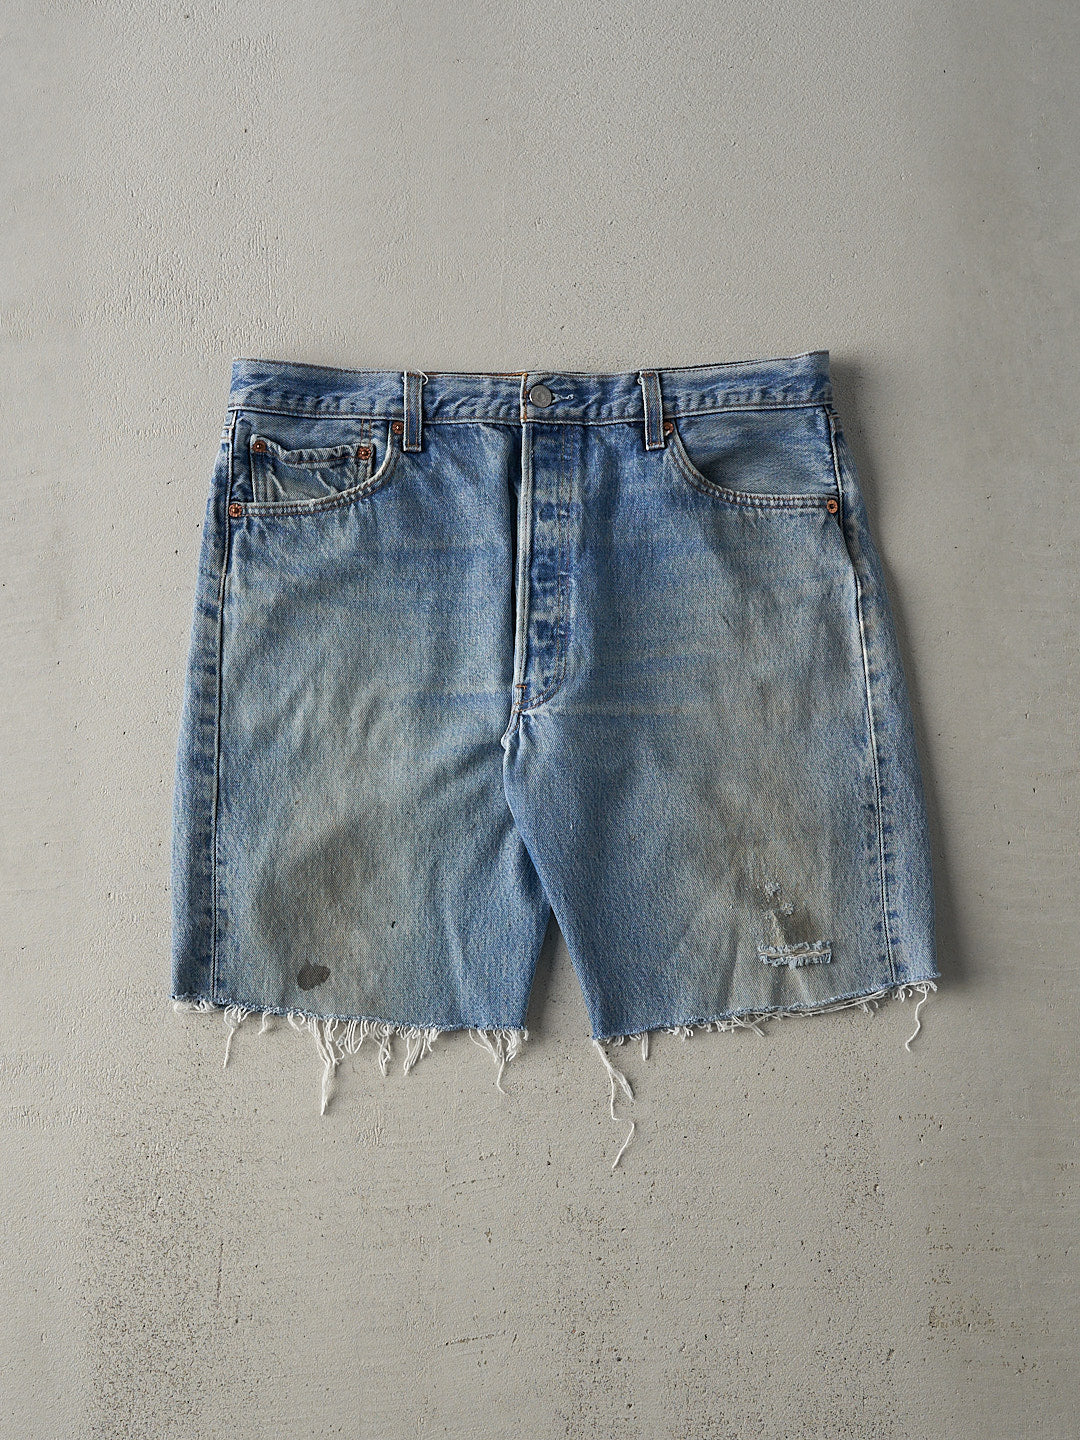 Vintage 90s Light Wash Levi's 501 Cut Off Jean Shorts (35.5x9)